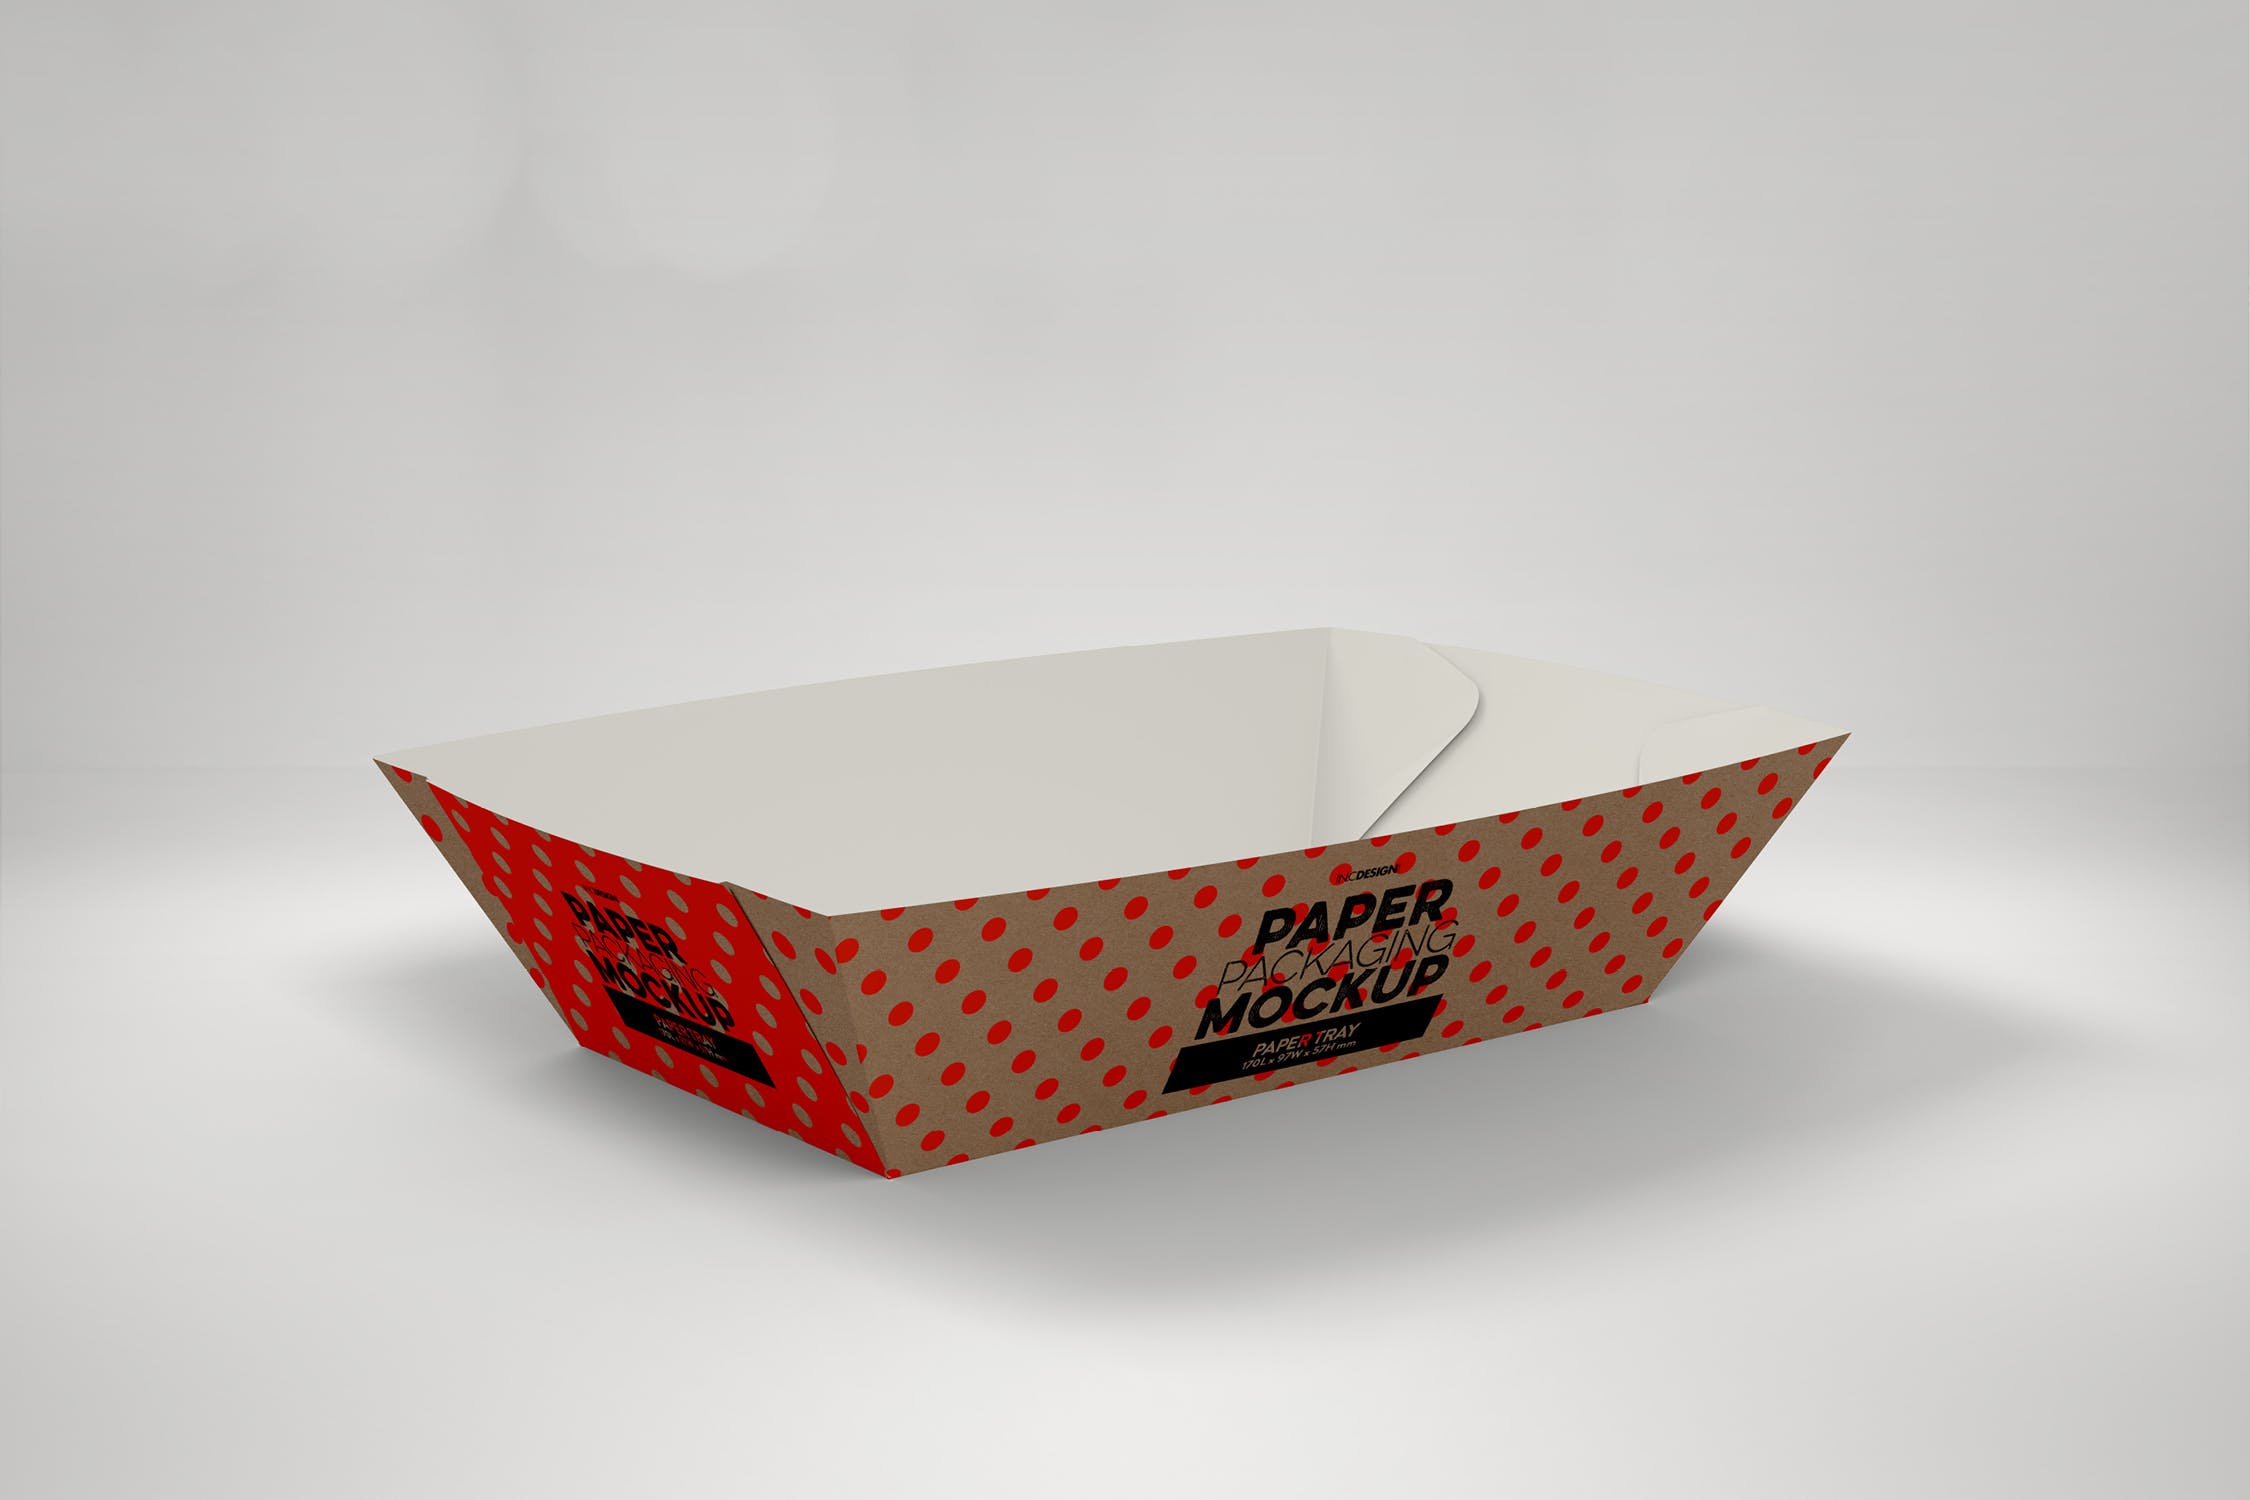 创意纸盘包装设计效果图样机模板 Paper Tray 1 Packaging Mockup插图(2)